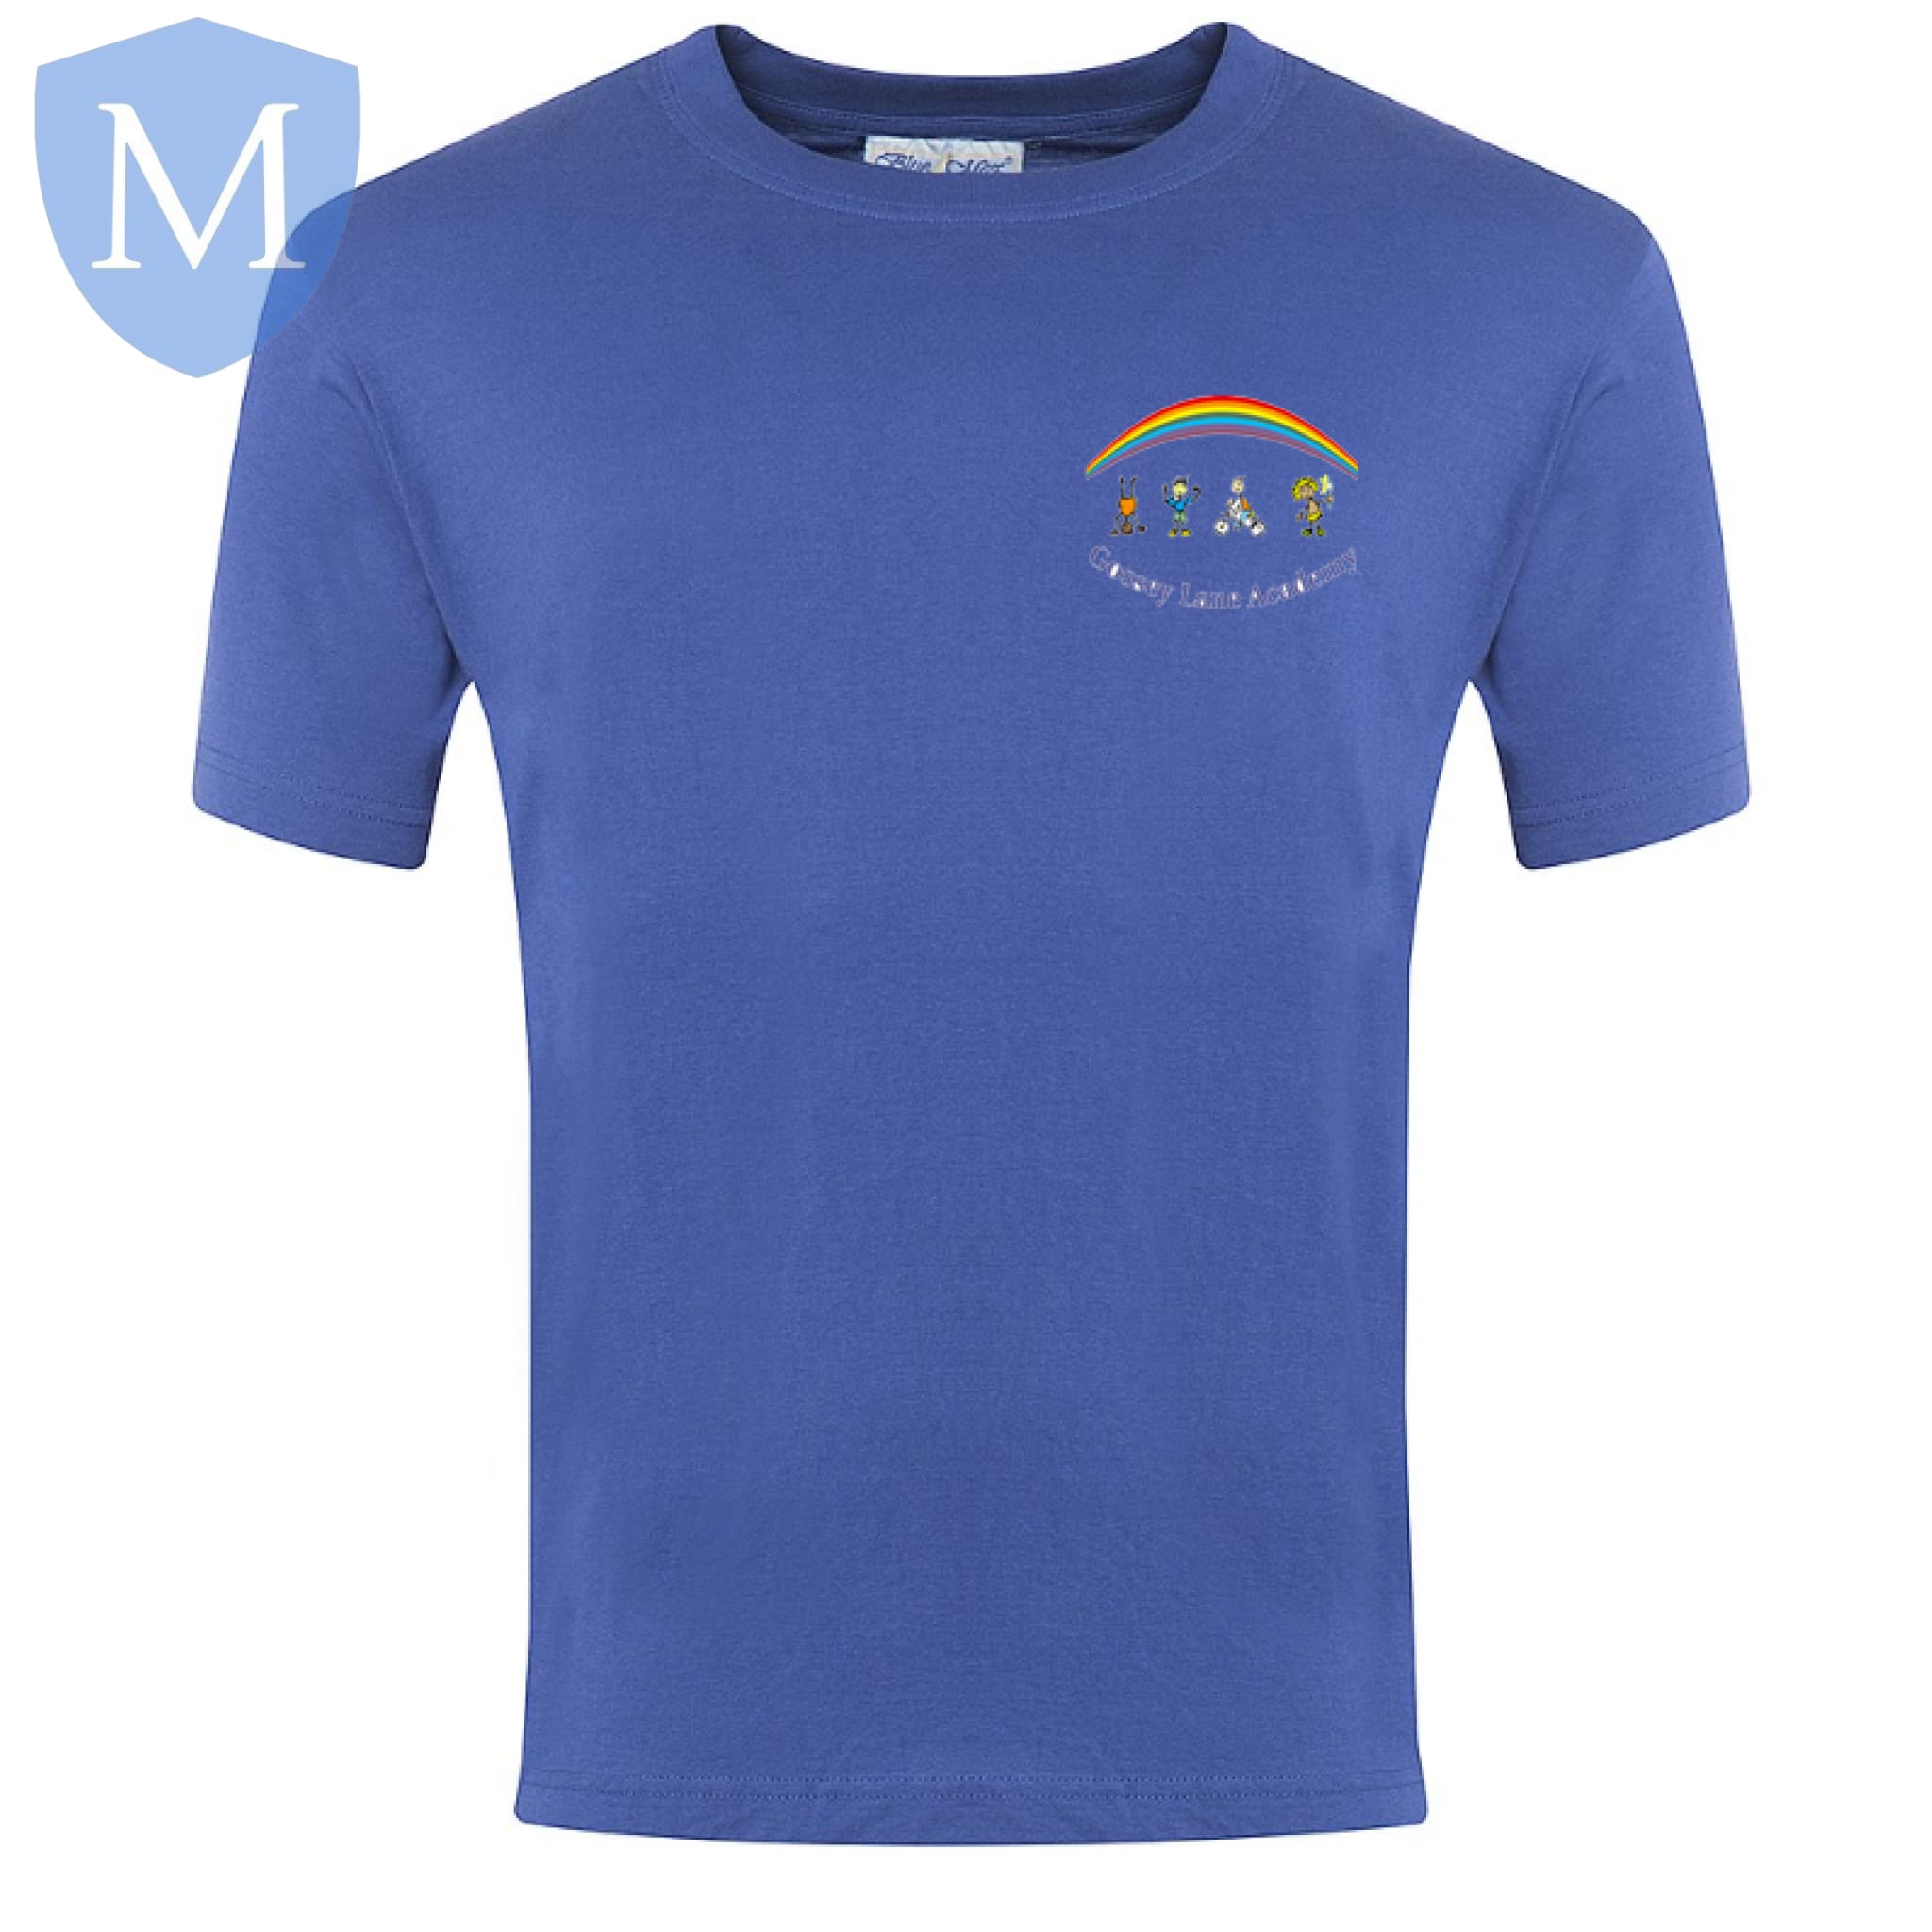 Gossey Lane P.e T-Shirt - Royal Blue